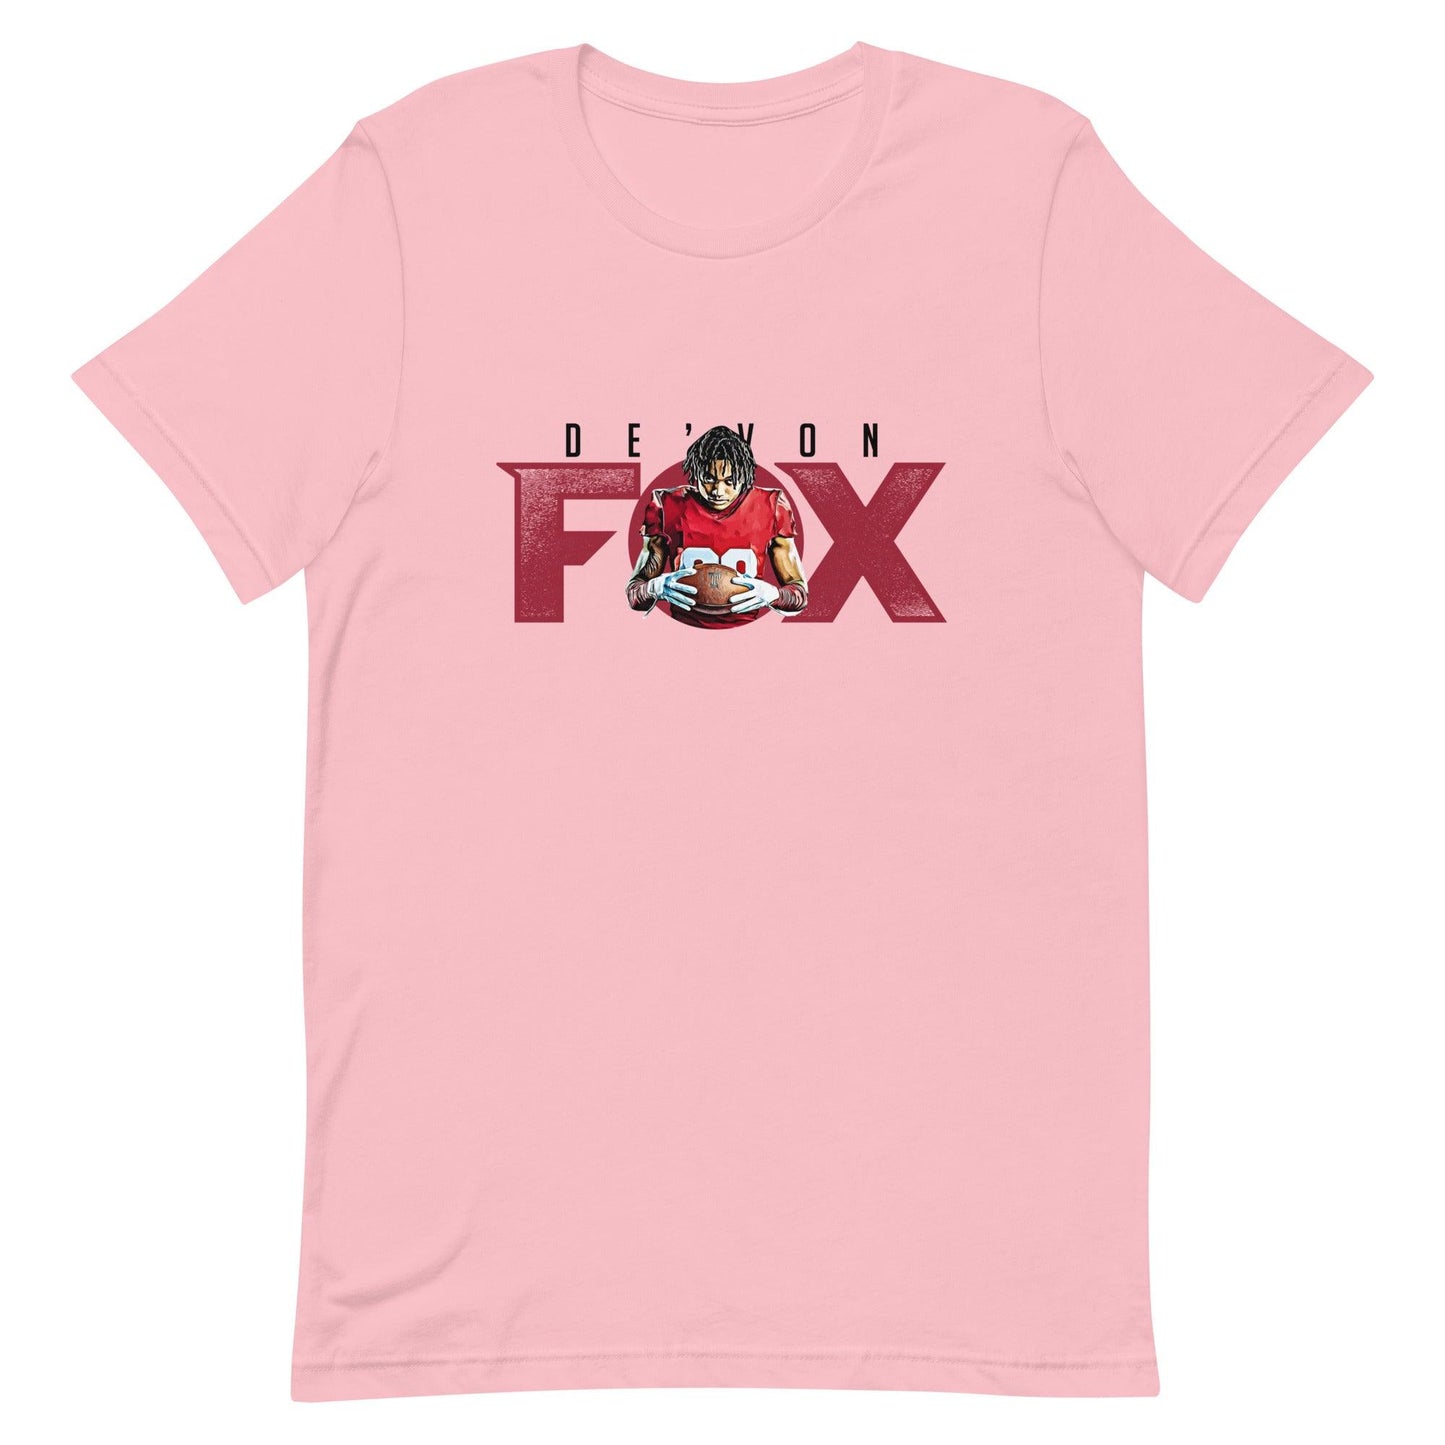 De'Von Fox "Gameday" t-shirt - Fan Arch